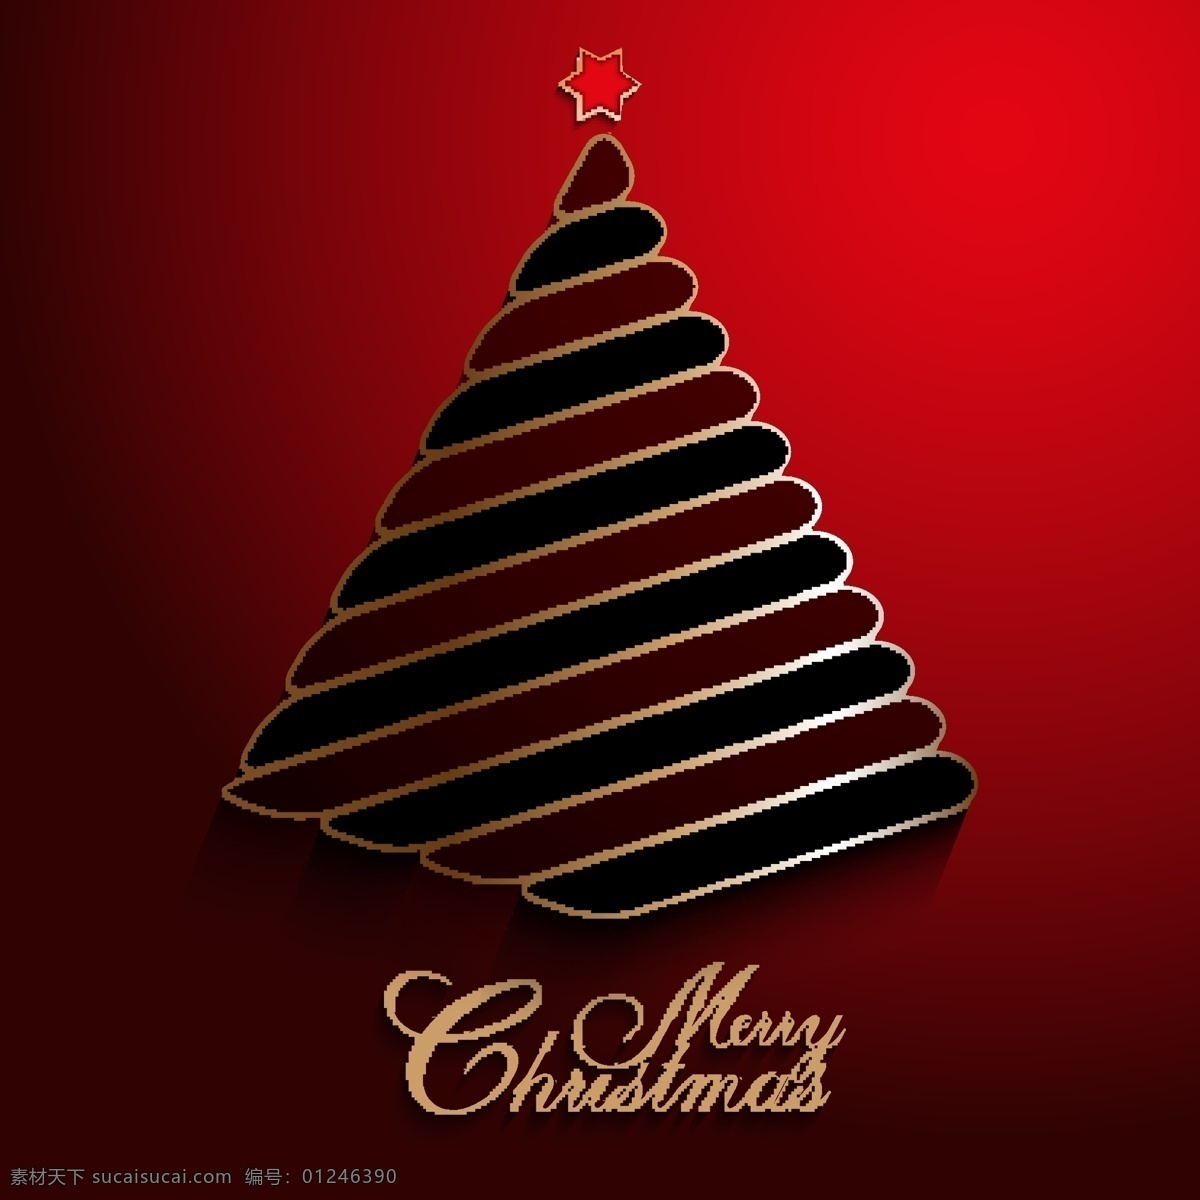 时尚 圣诞树 矢量 节日元素 矢量设计素材 彩色矢量图 节日庆典 矢量线条 背景 节日背景